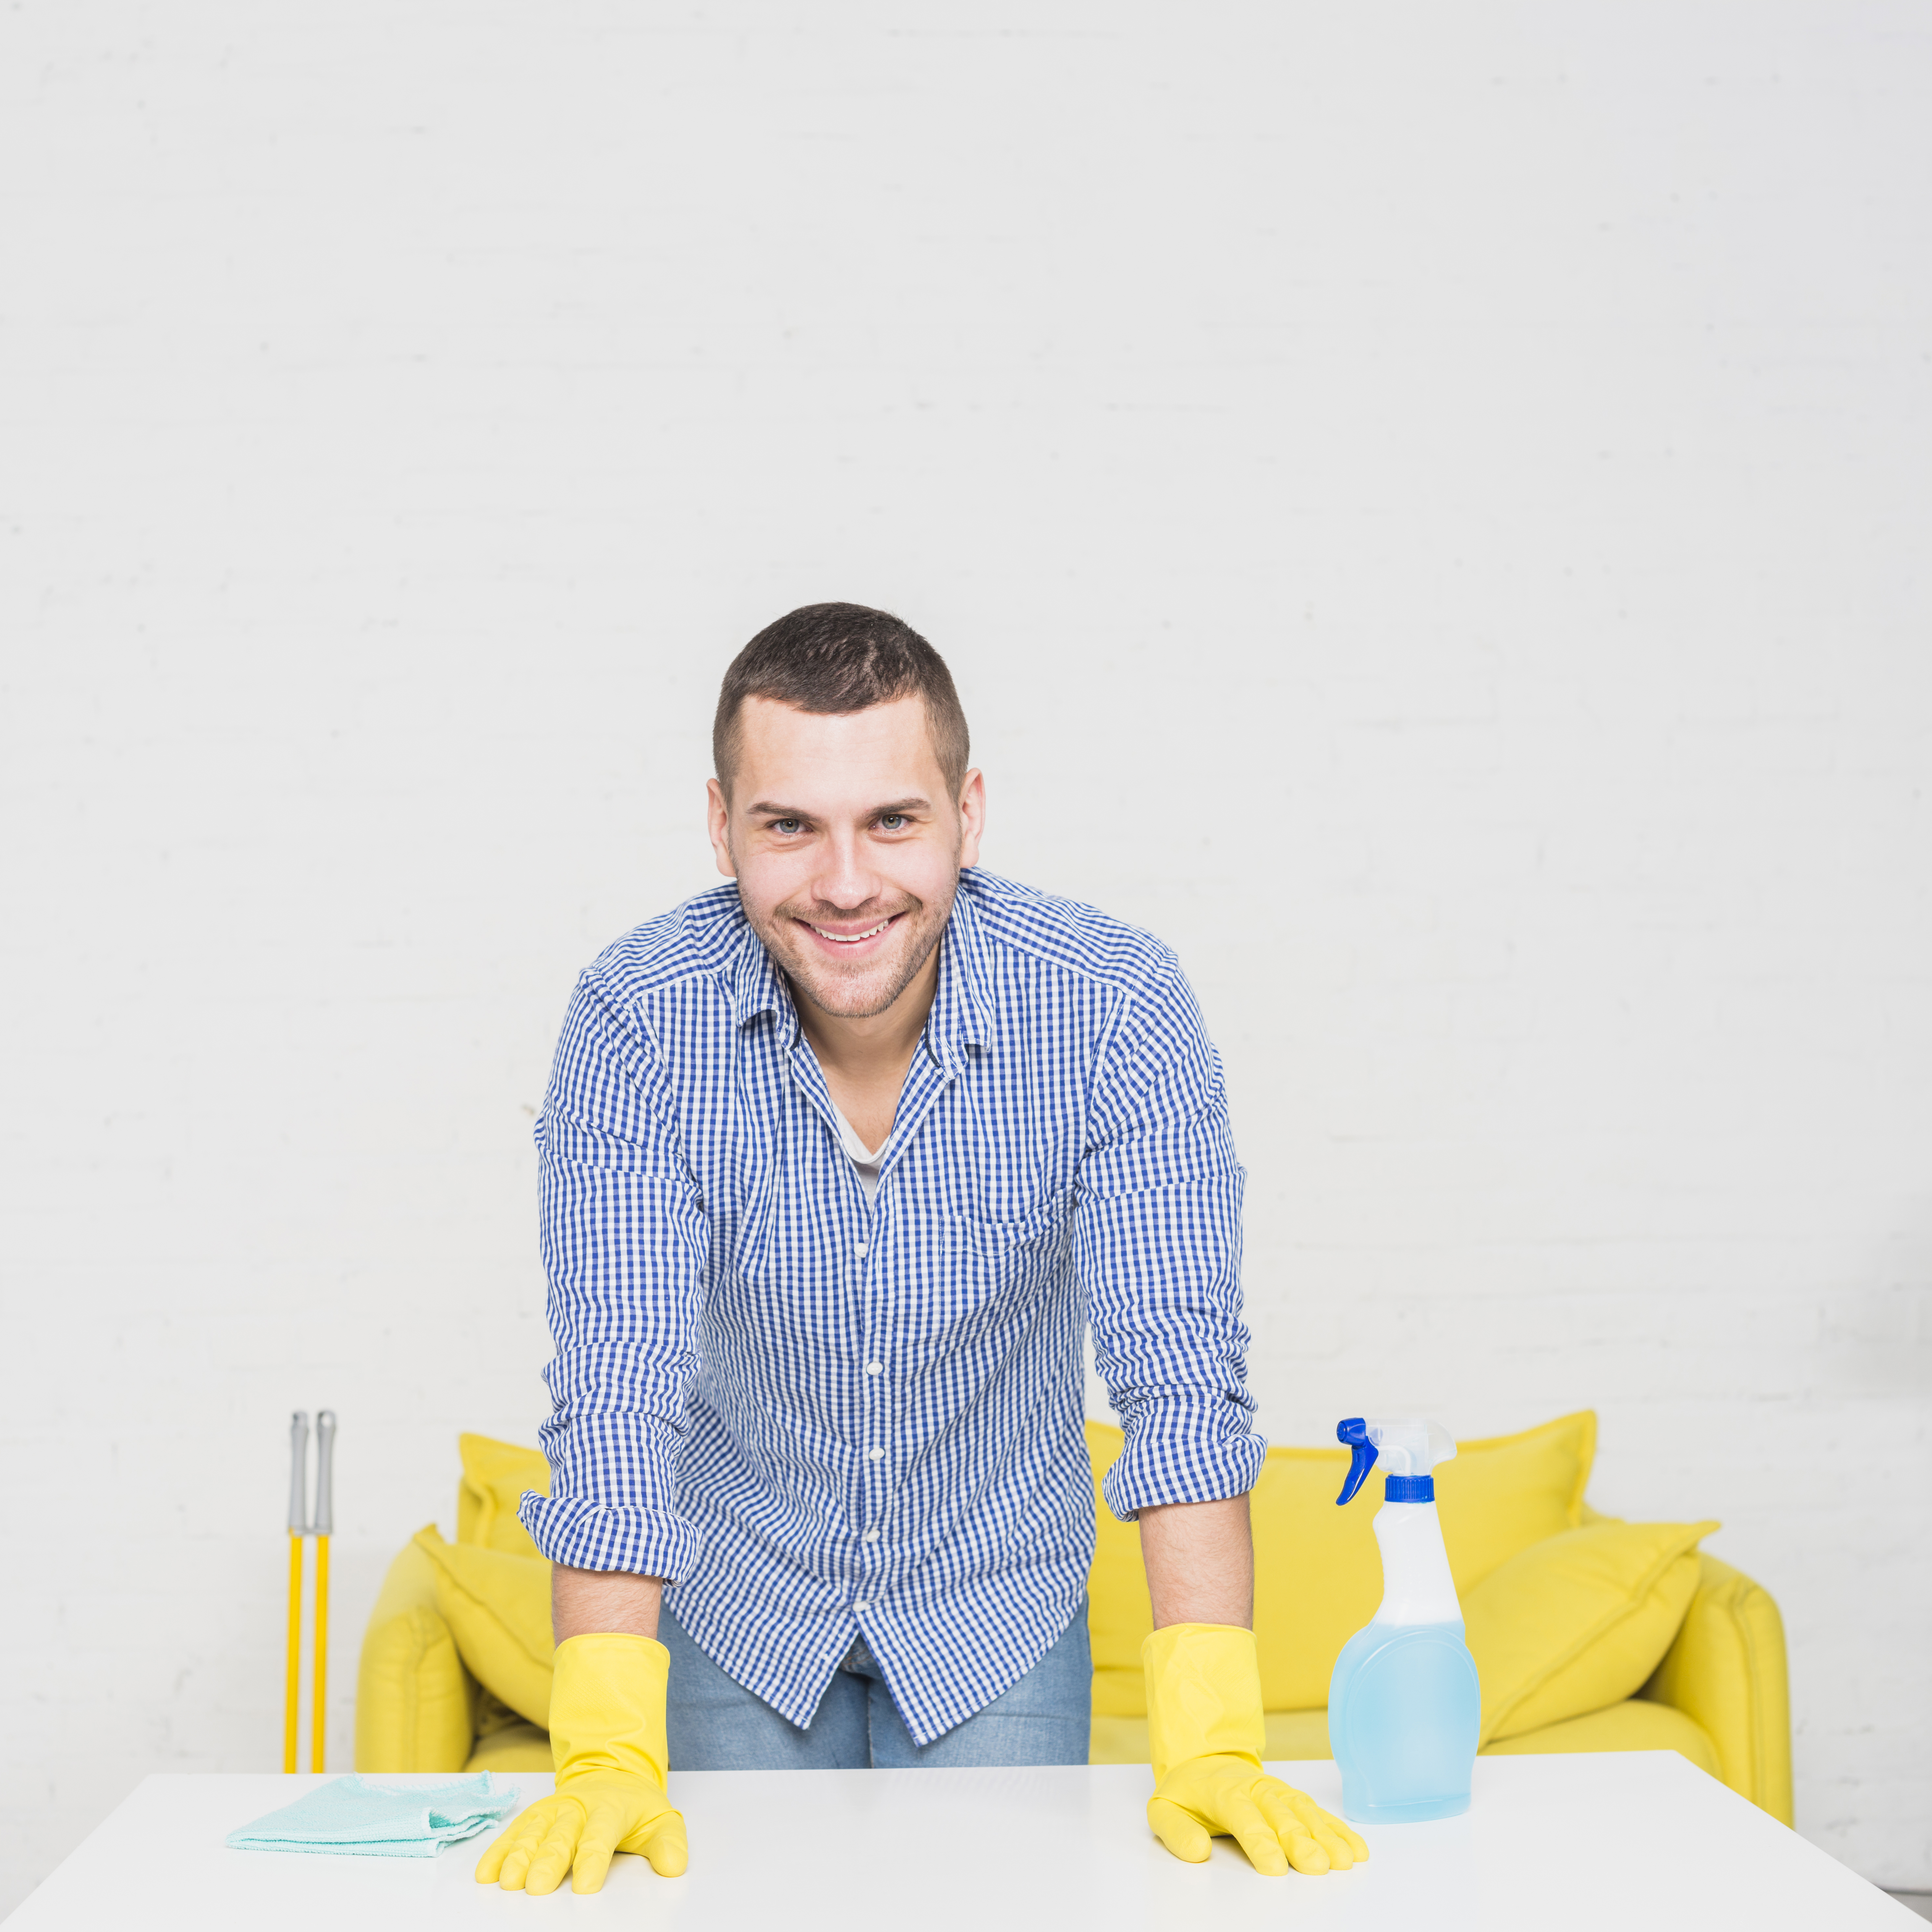 Mann lächelt, während er von Reinigungsmitteln umgeben ist | Quelle: Freepik